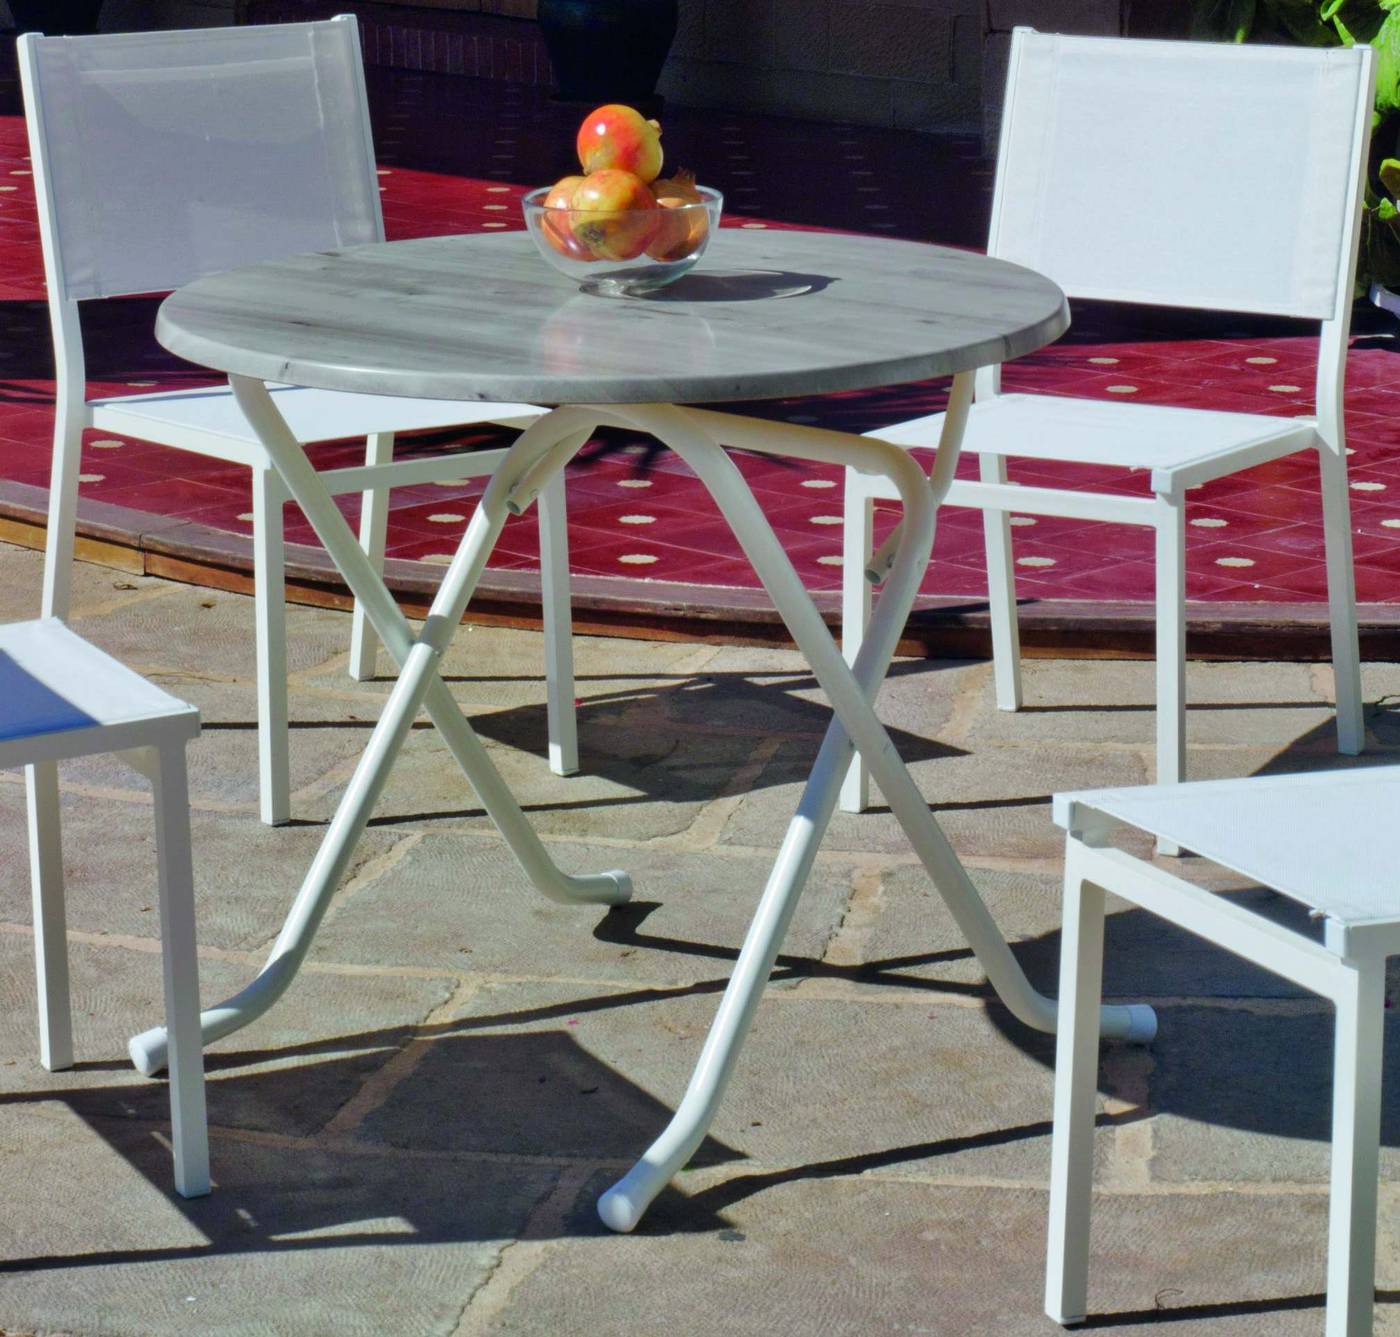 Mesa redonda plegable de 90 cm., estructura de aluminio color blanco y tablero heverzaplus gris imitación mármol